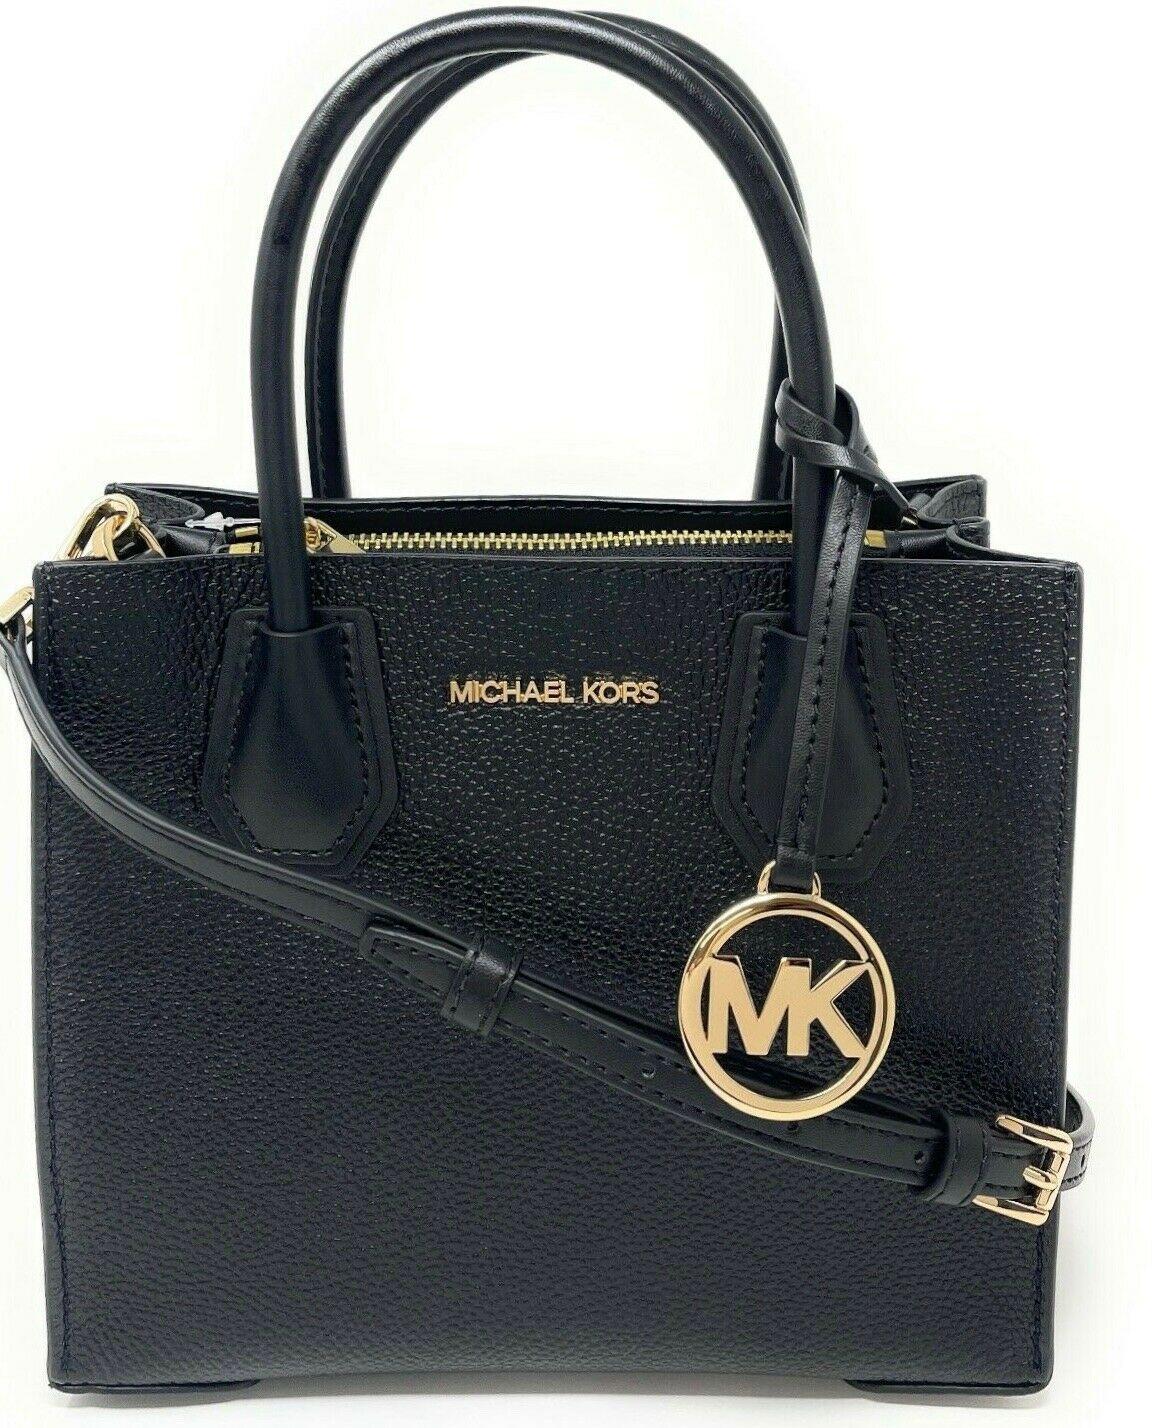 Michael Kors Mercer Medium Messenger Bag In Black Leather/gold